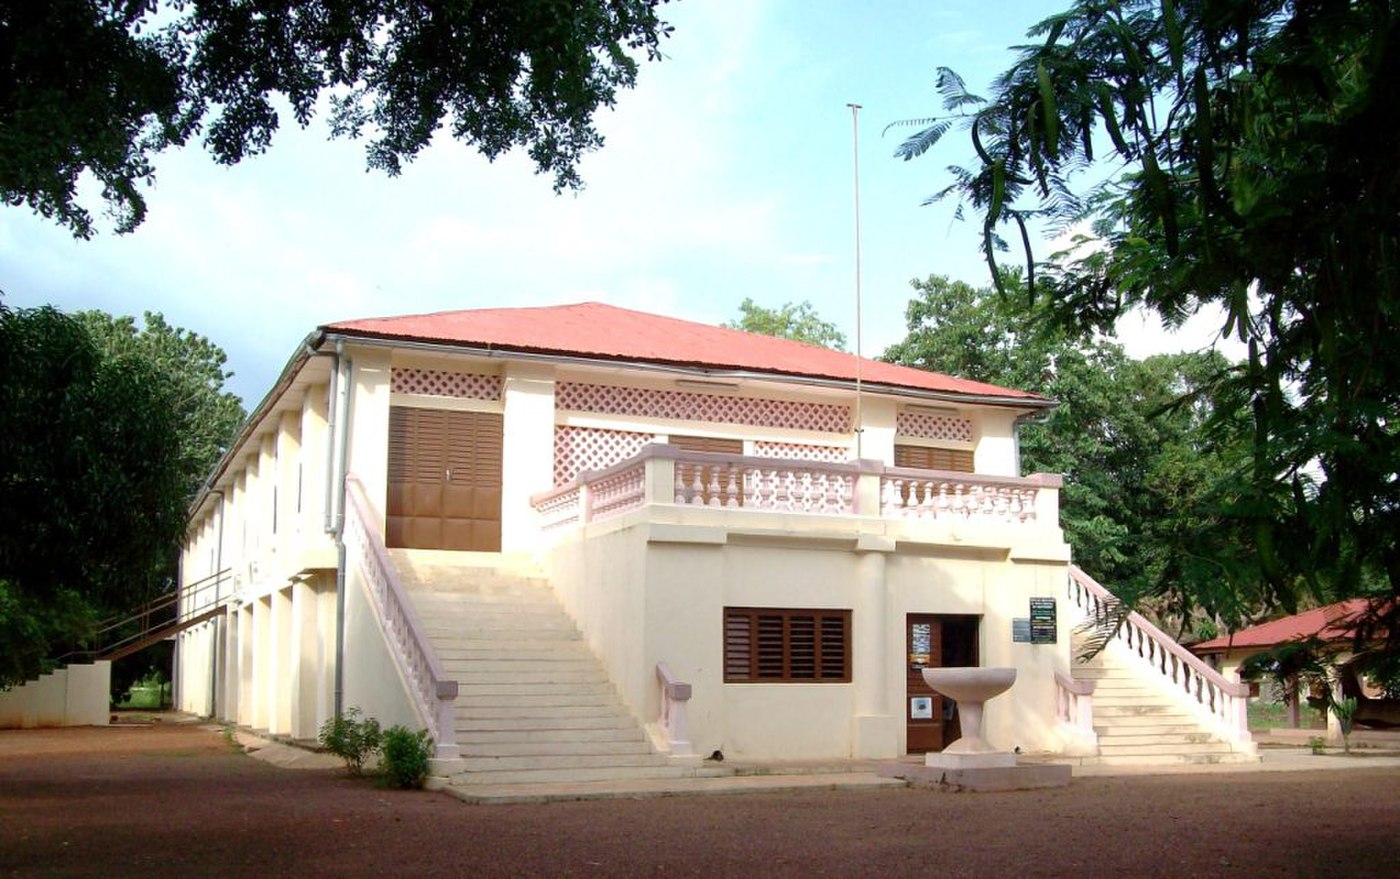 Le musée Régional de Natitingou | Express Tourisme Bénin